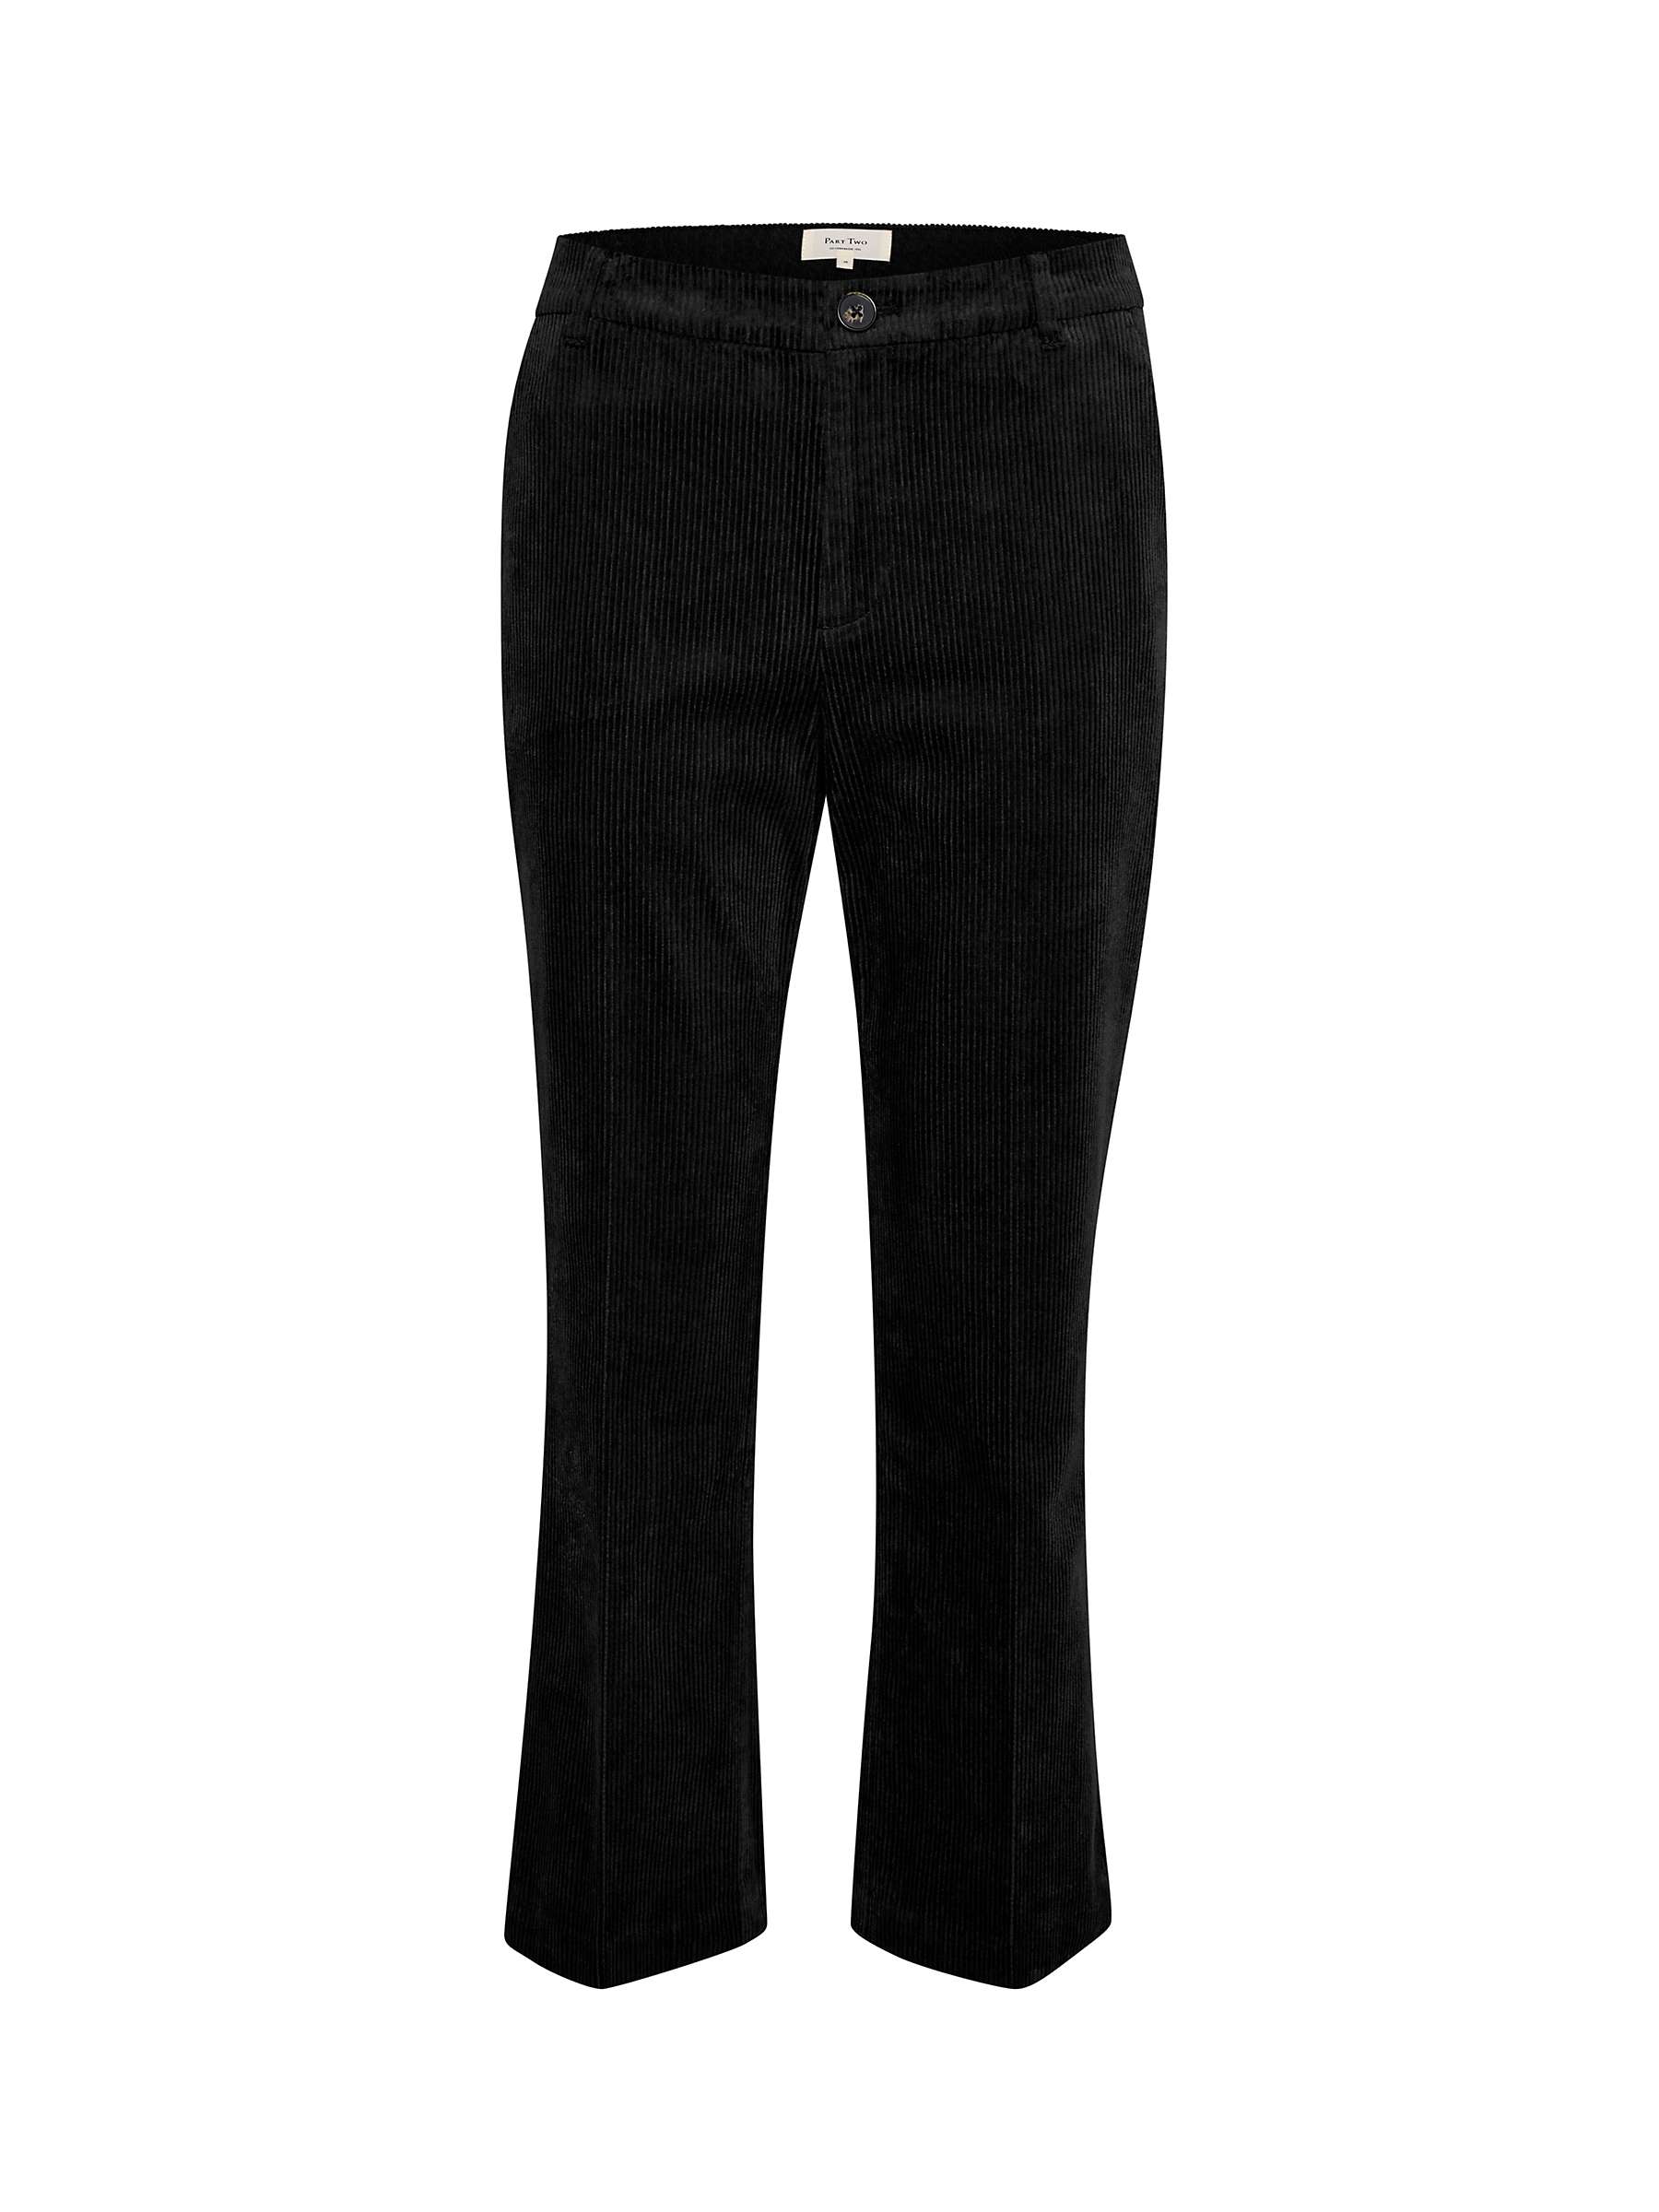 Buy Part Two Misha Plain Corduroy Trousers, Black Online at johnlewis.com